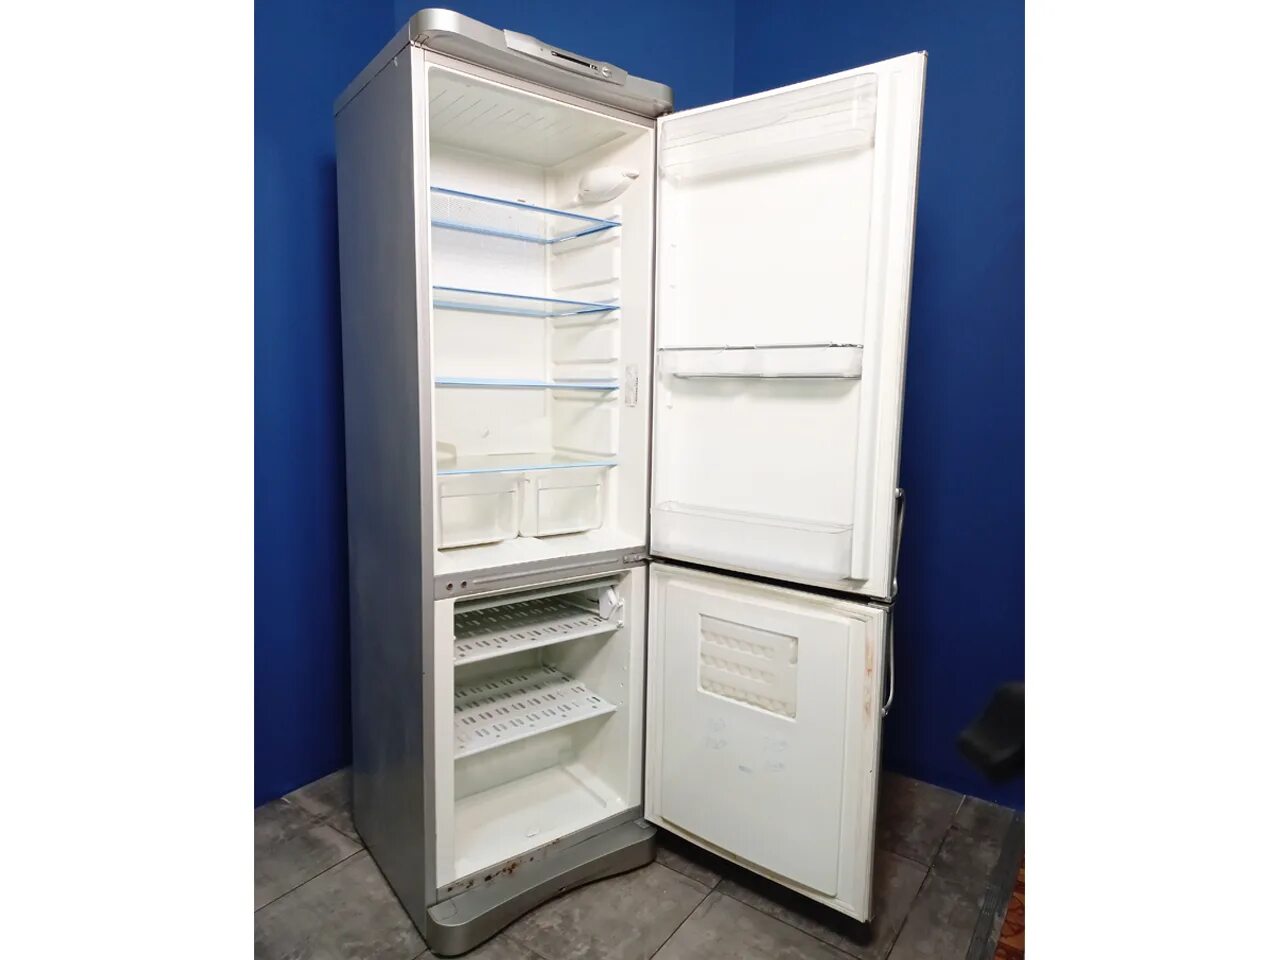 Индезит c132nfg.016. Холодильник Индезит 132. Купить б у холодильник в спб